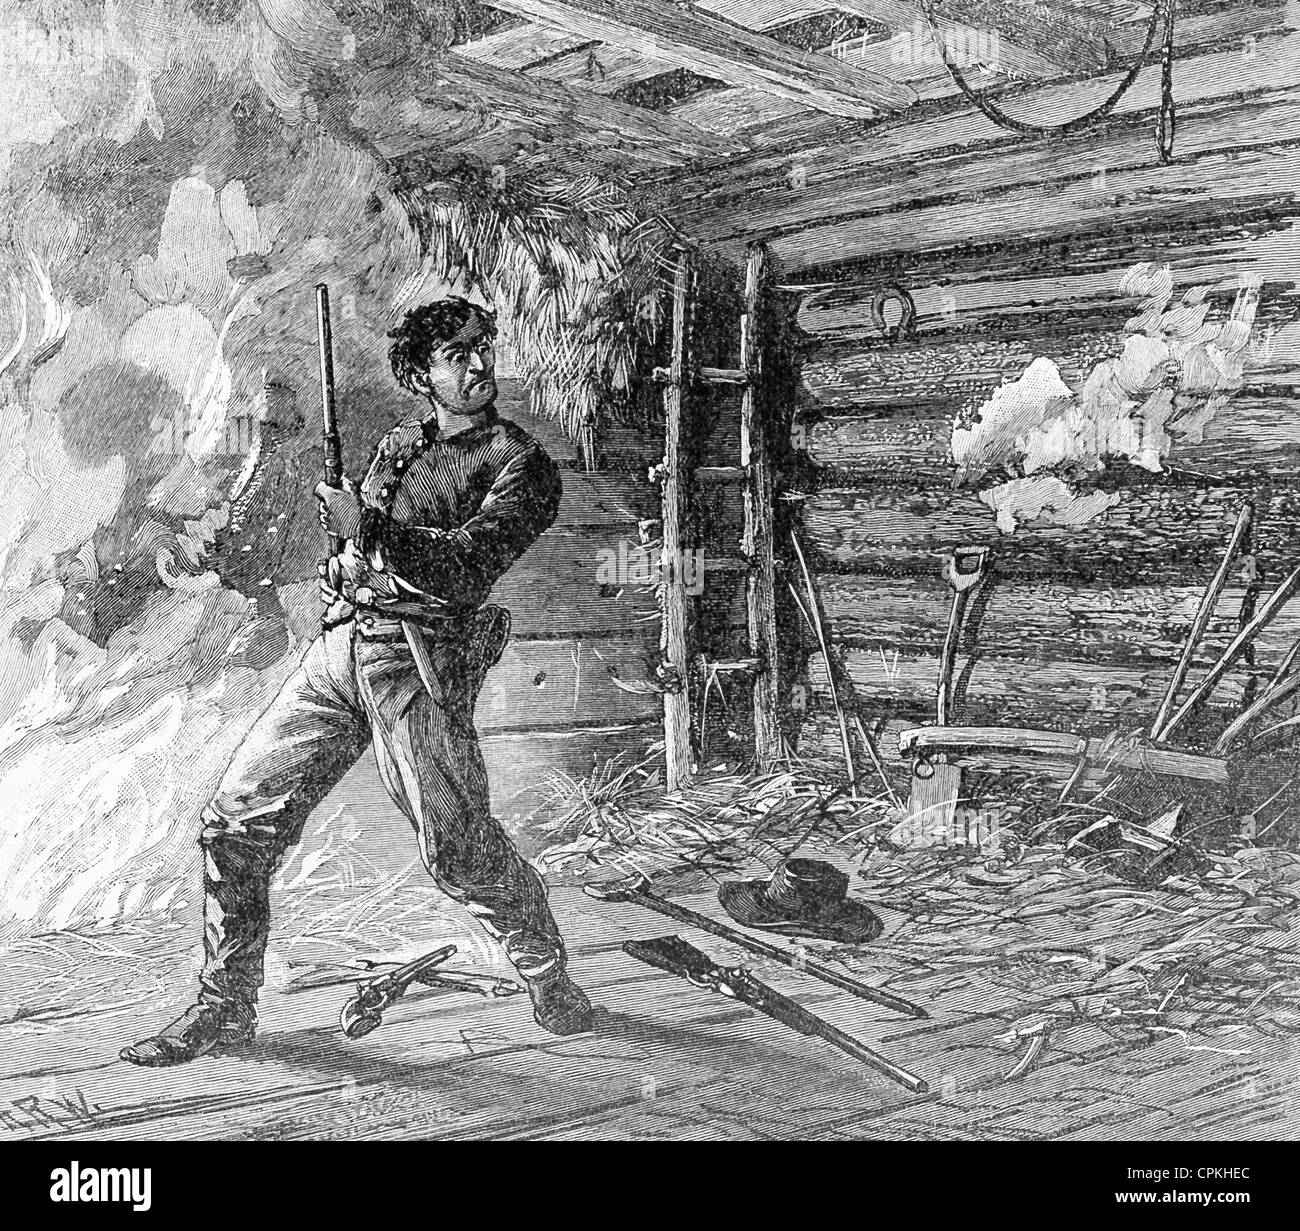 In der Nacht des 14. April 1865 erschossen bekannte Schauspieler John Wilkes Booth Präsident Abraham Lincoln. Stockfoto